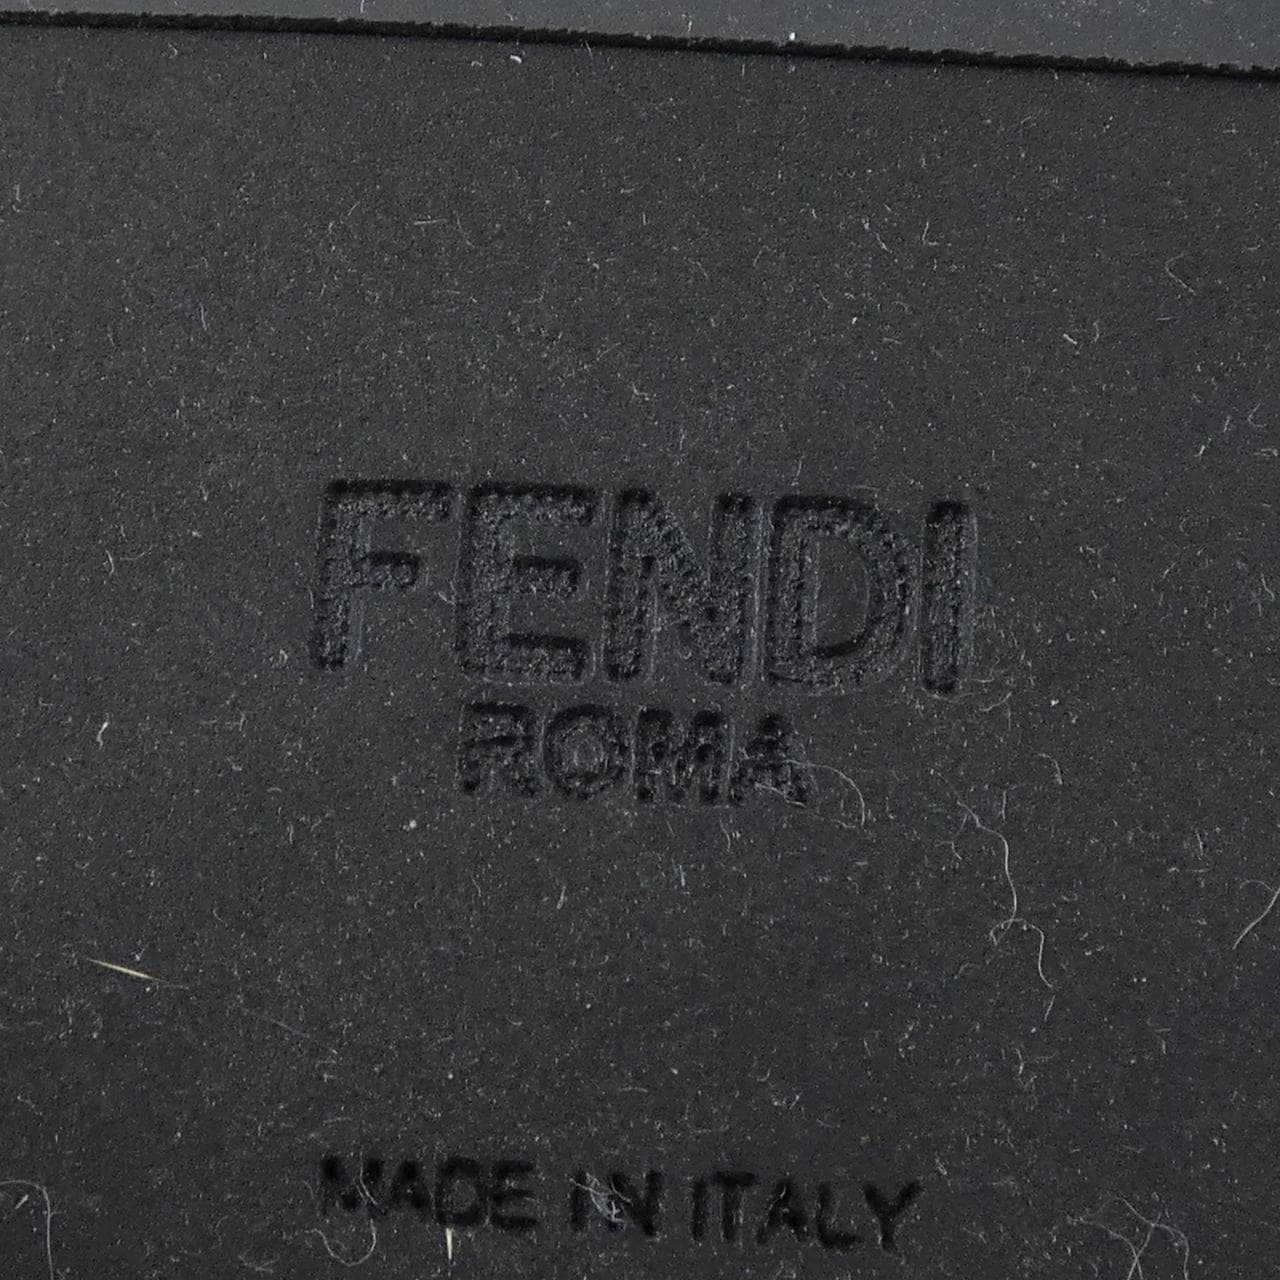 フェンディ FENDI ブーツ